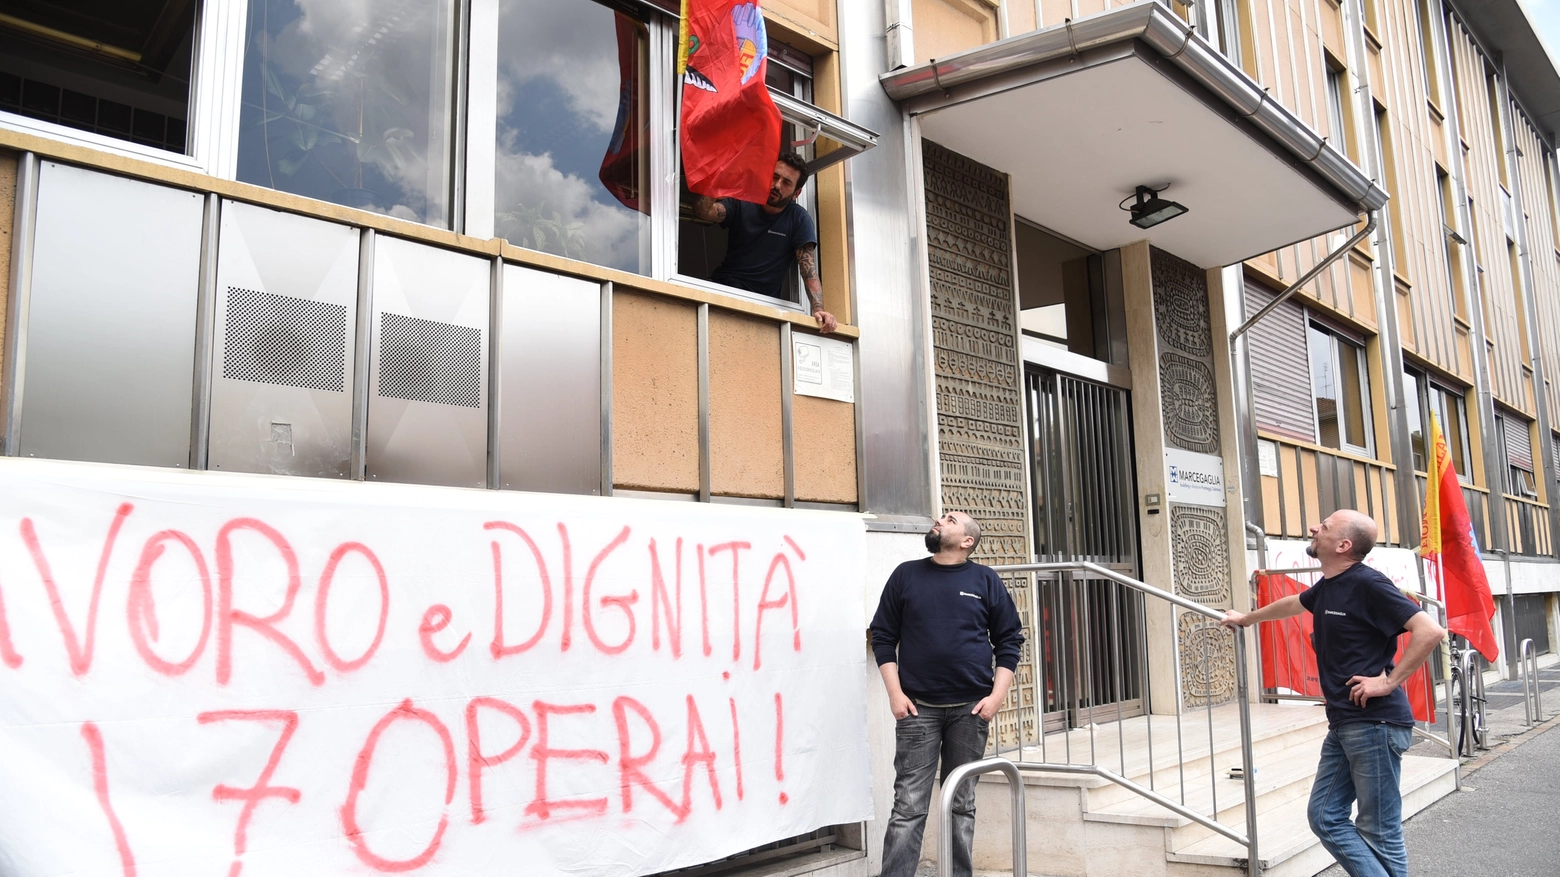 L'occupazione degli uffici a Milano